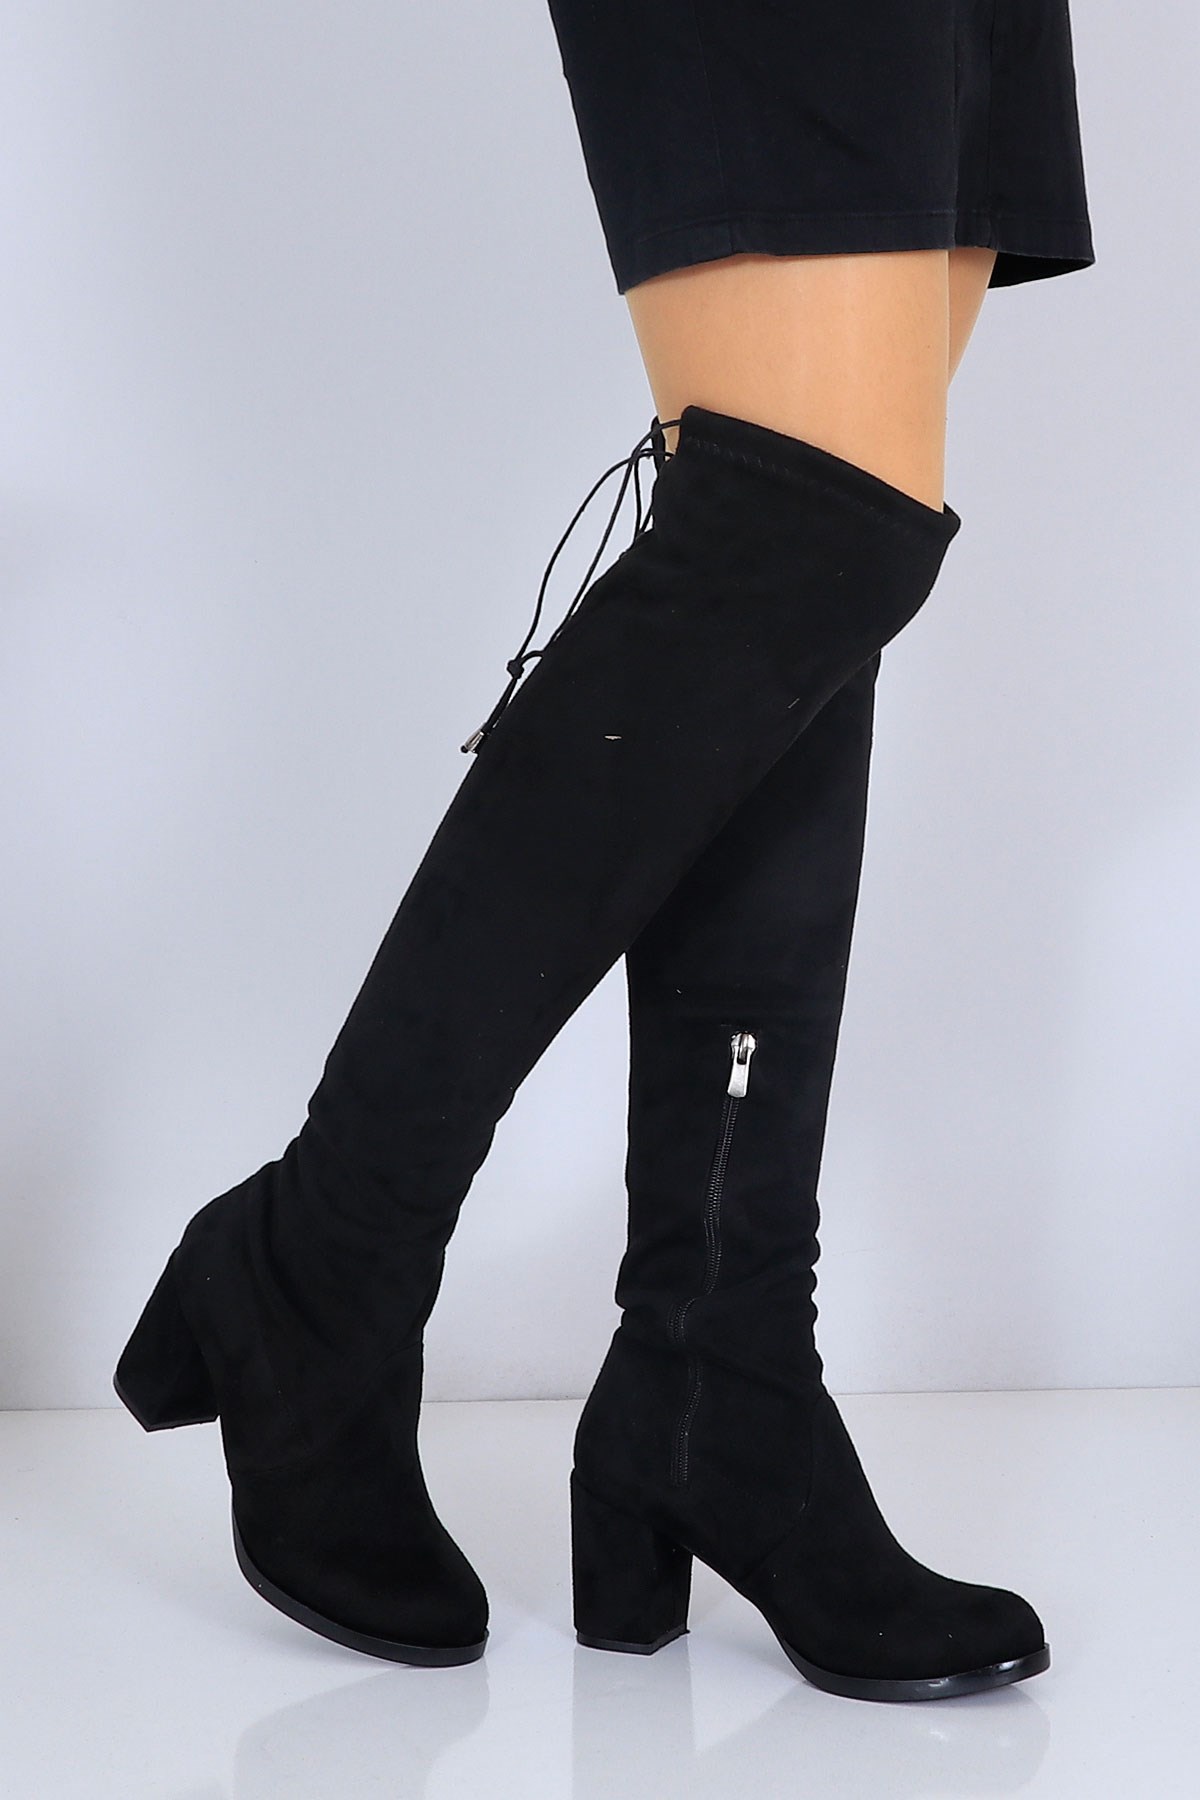 Siyah süet Kalın Topuklu Kadın Çizme 20 Fiyatı ve Modelleri